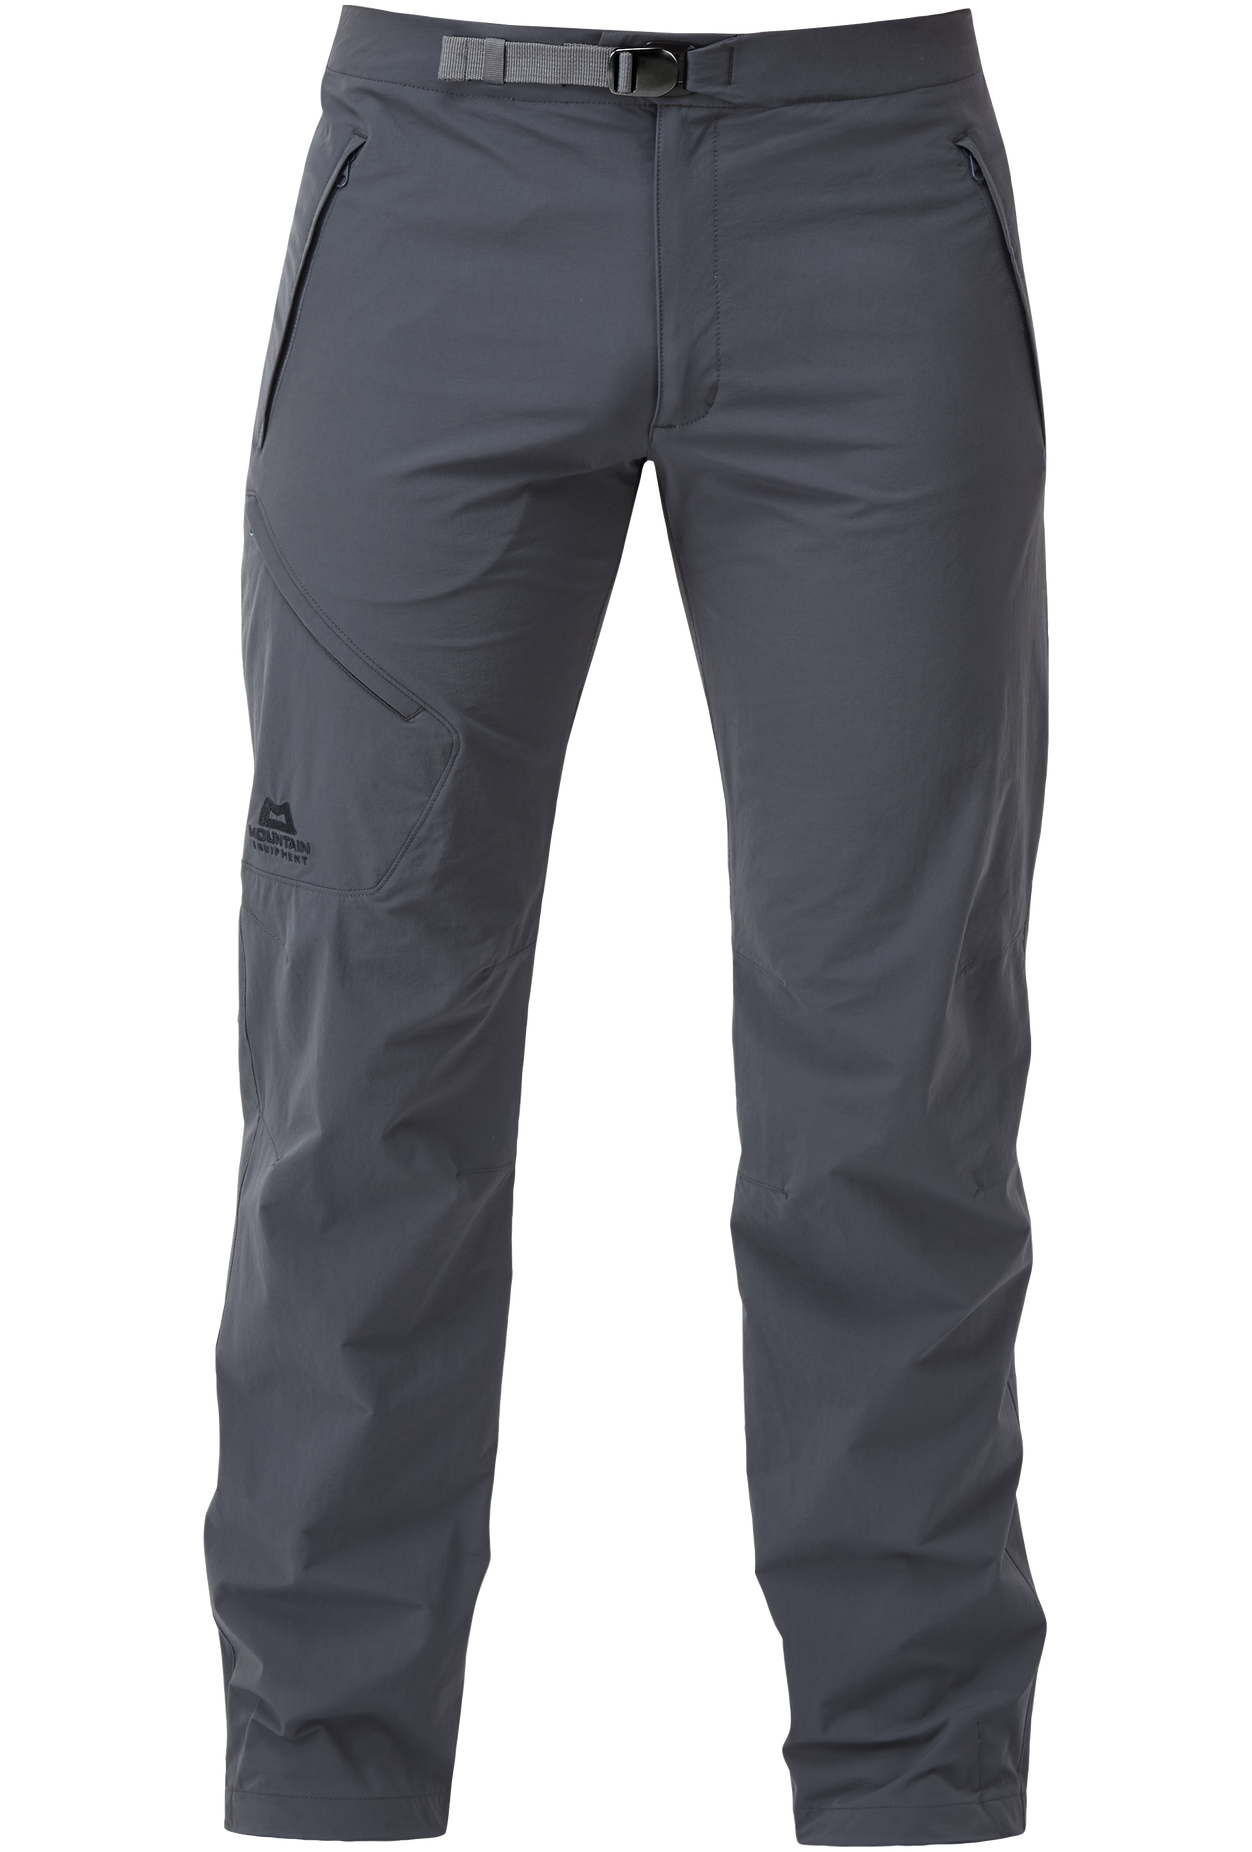 Mountain Equipment pánské softshellové kalhoty Comici Pant - zkrácené Barva: Ombre Blue, Velikost: 28/XS